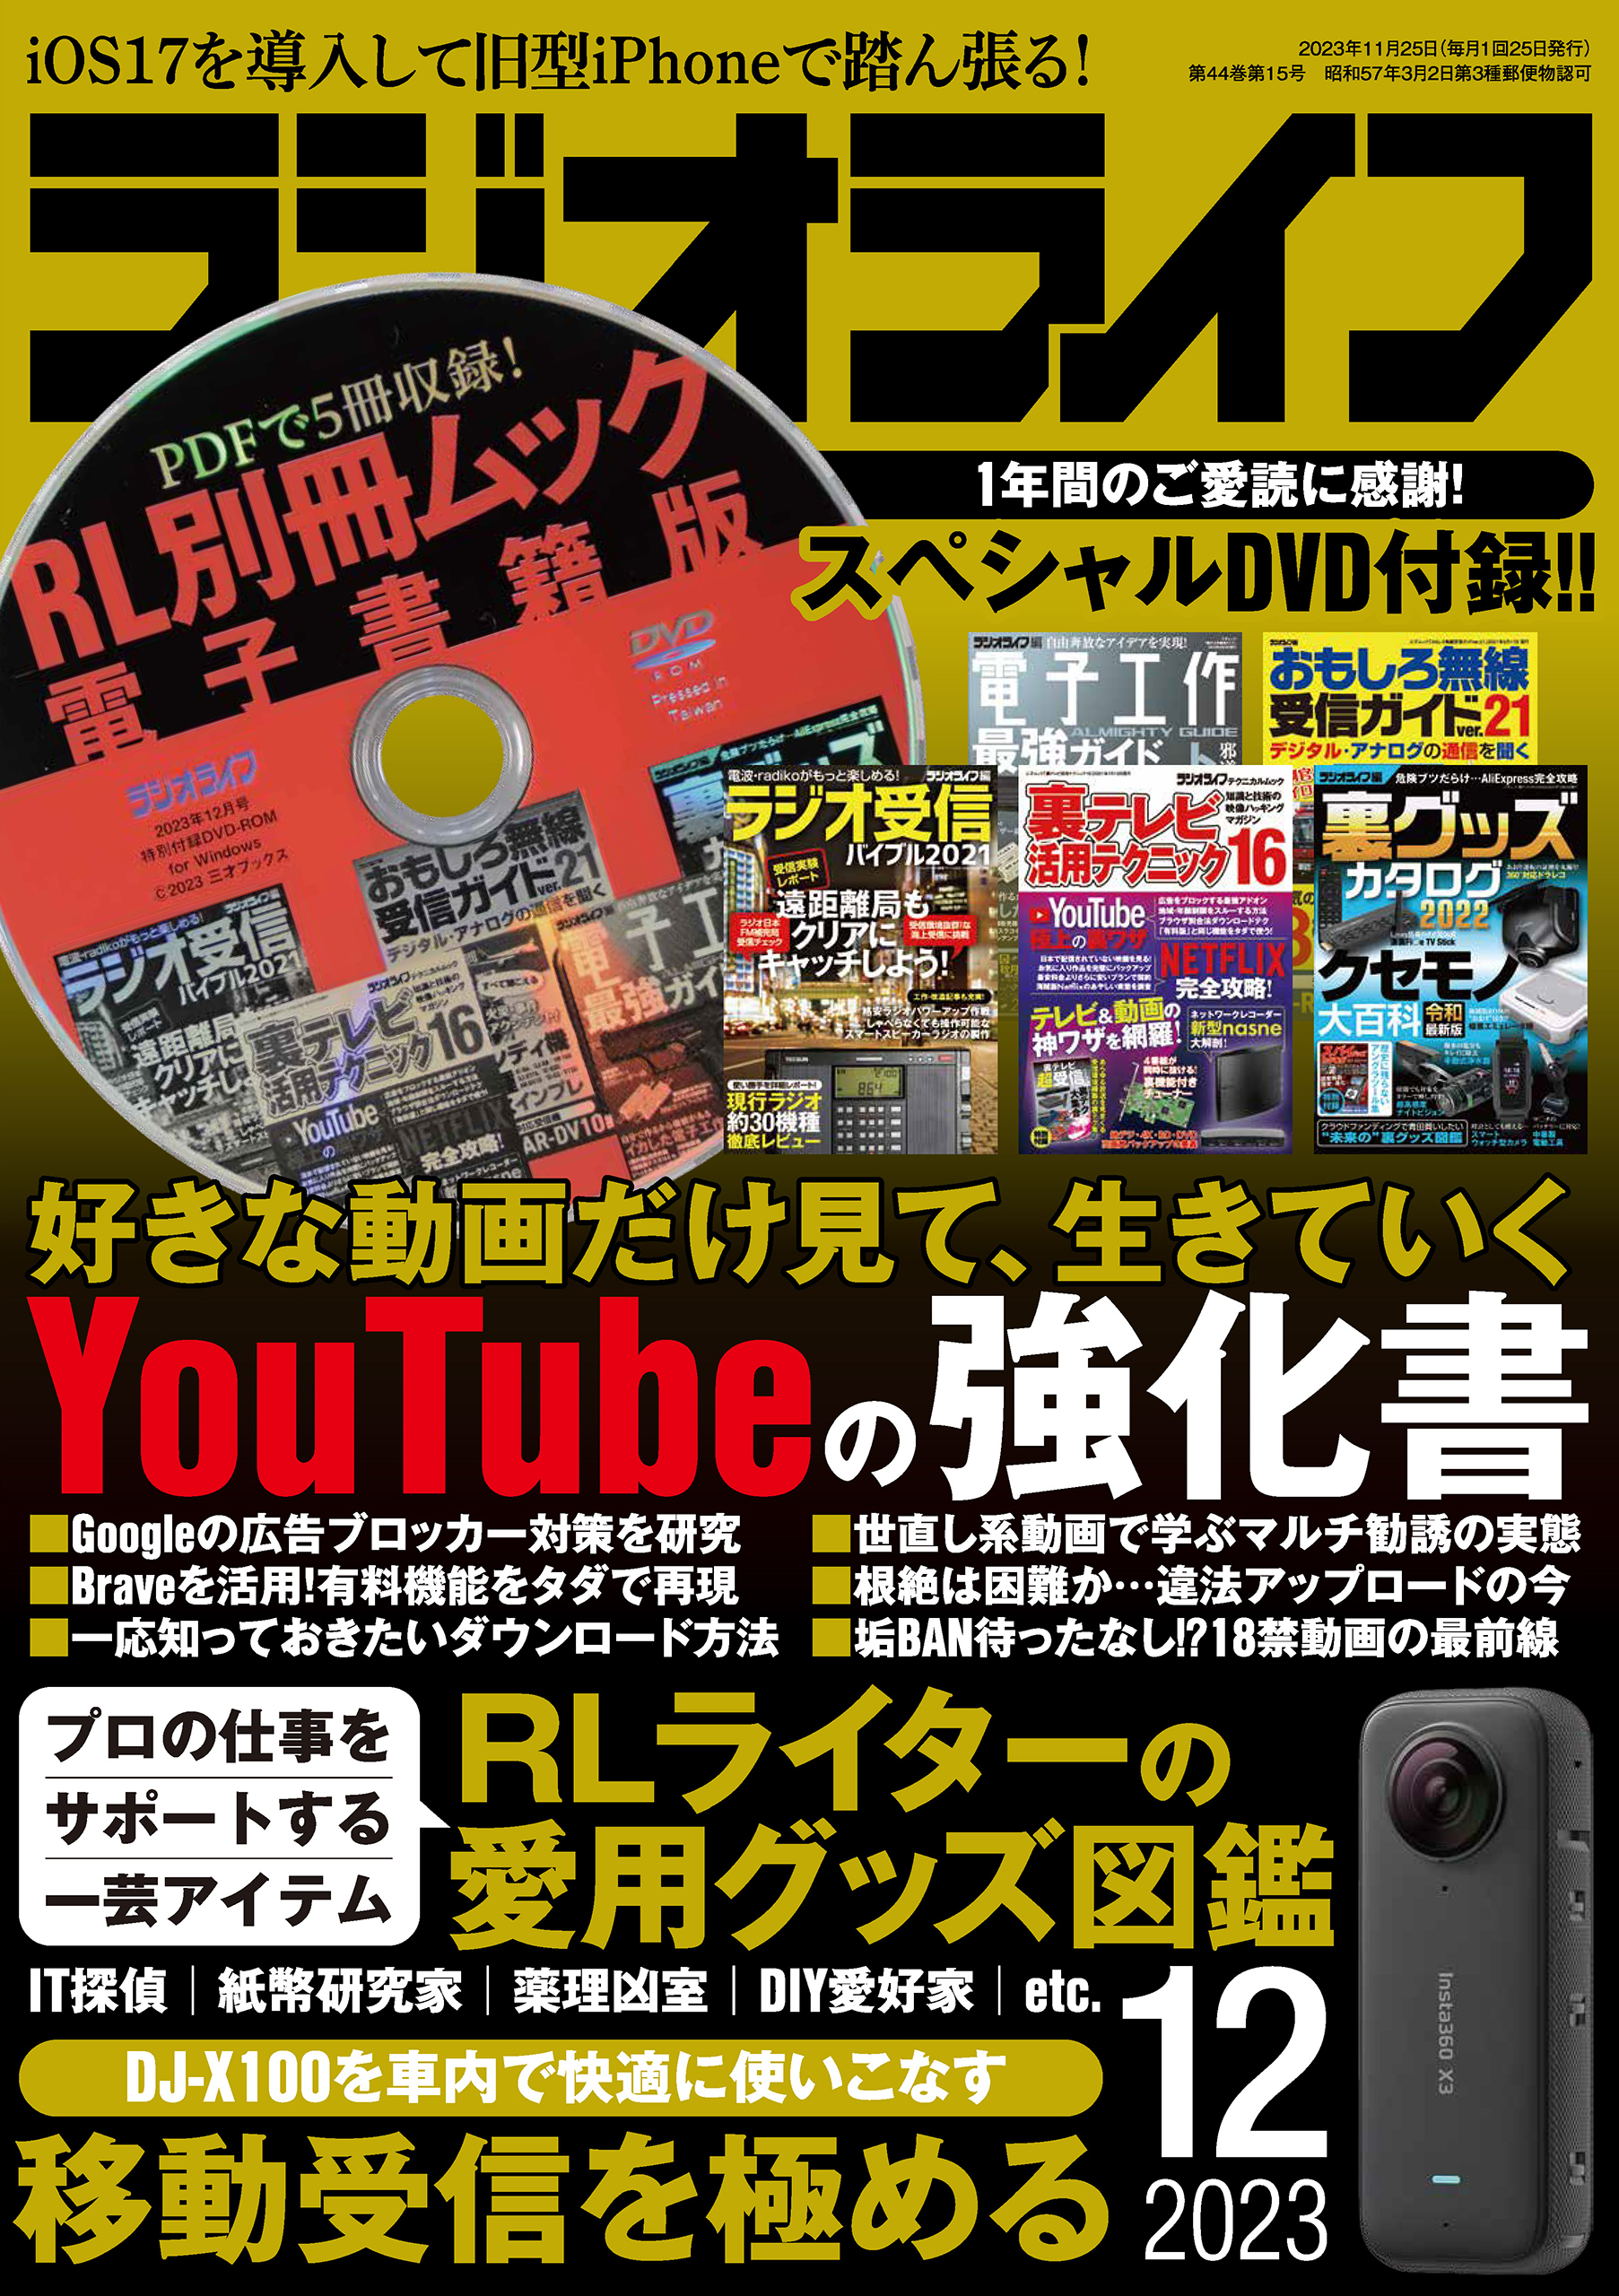 月刊アイアンマン2009年9月号特別DVD付録